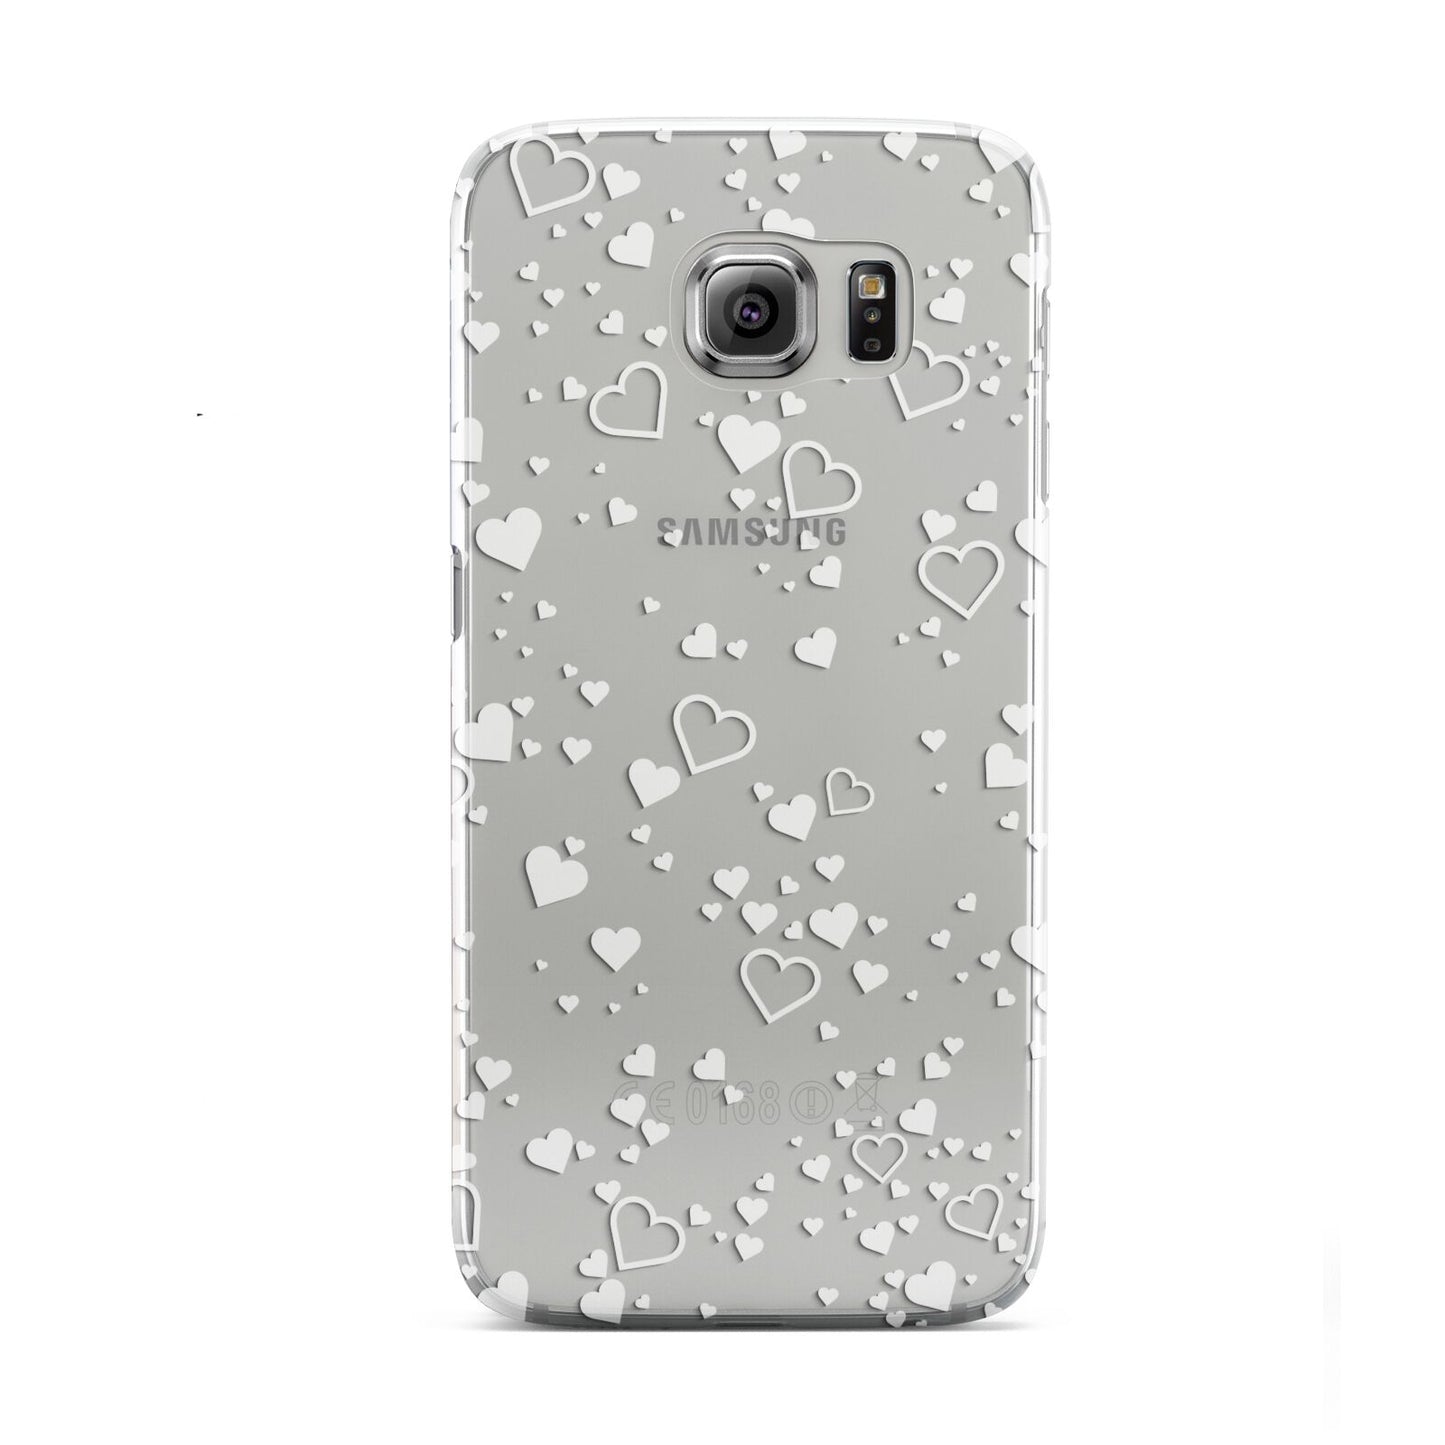 White Heart Samsung Galaxy S6 Case